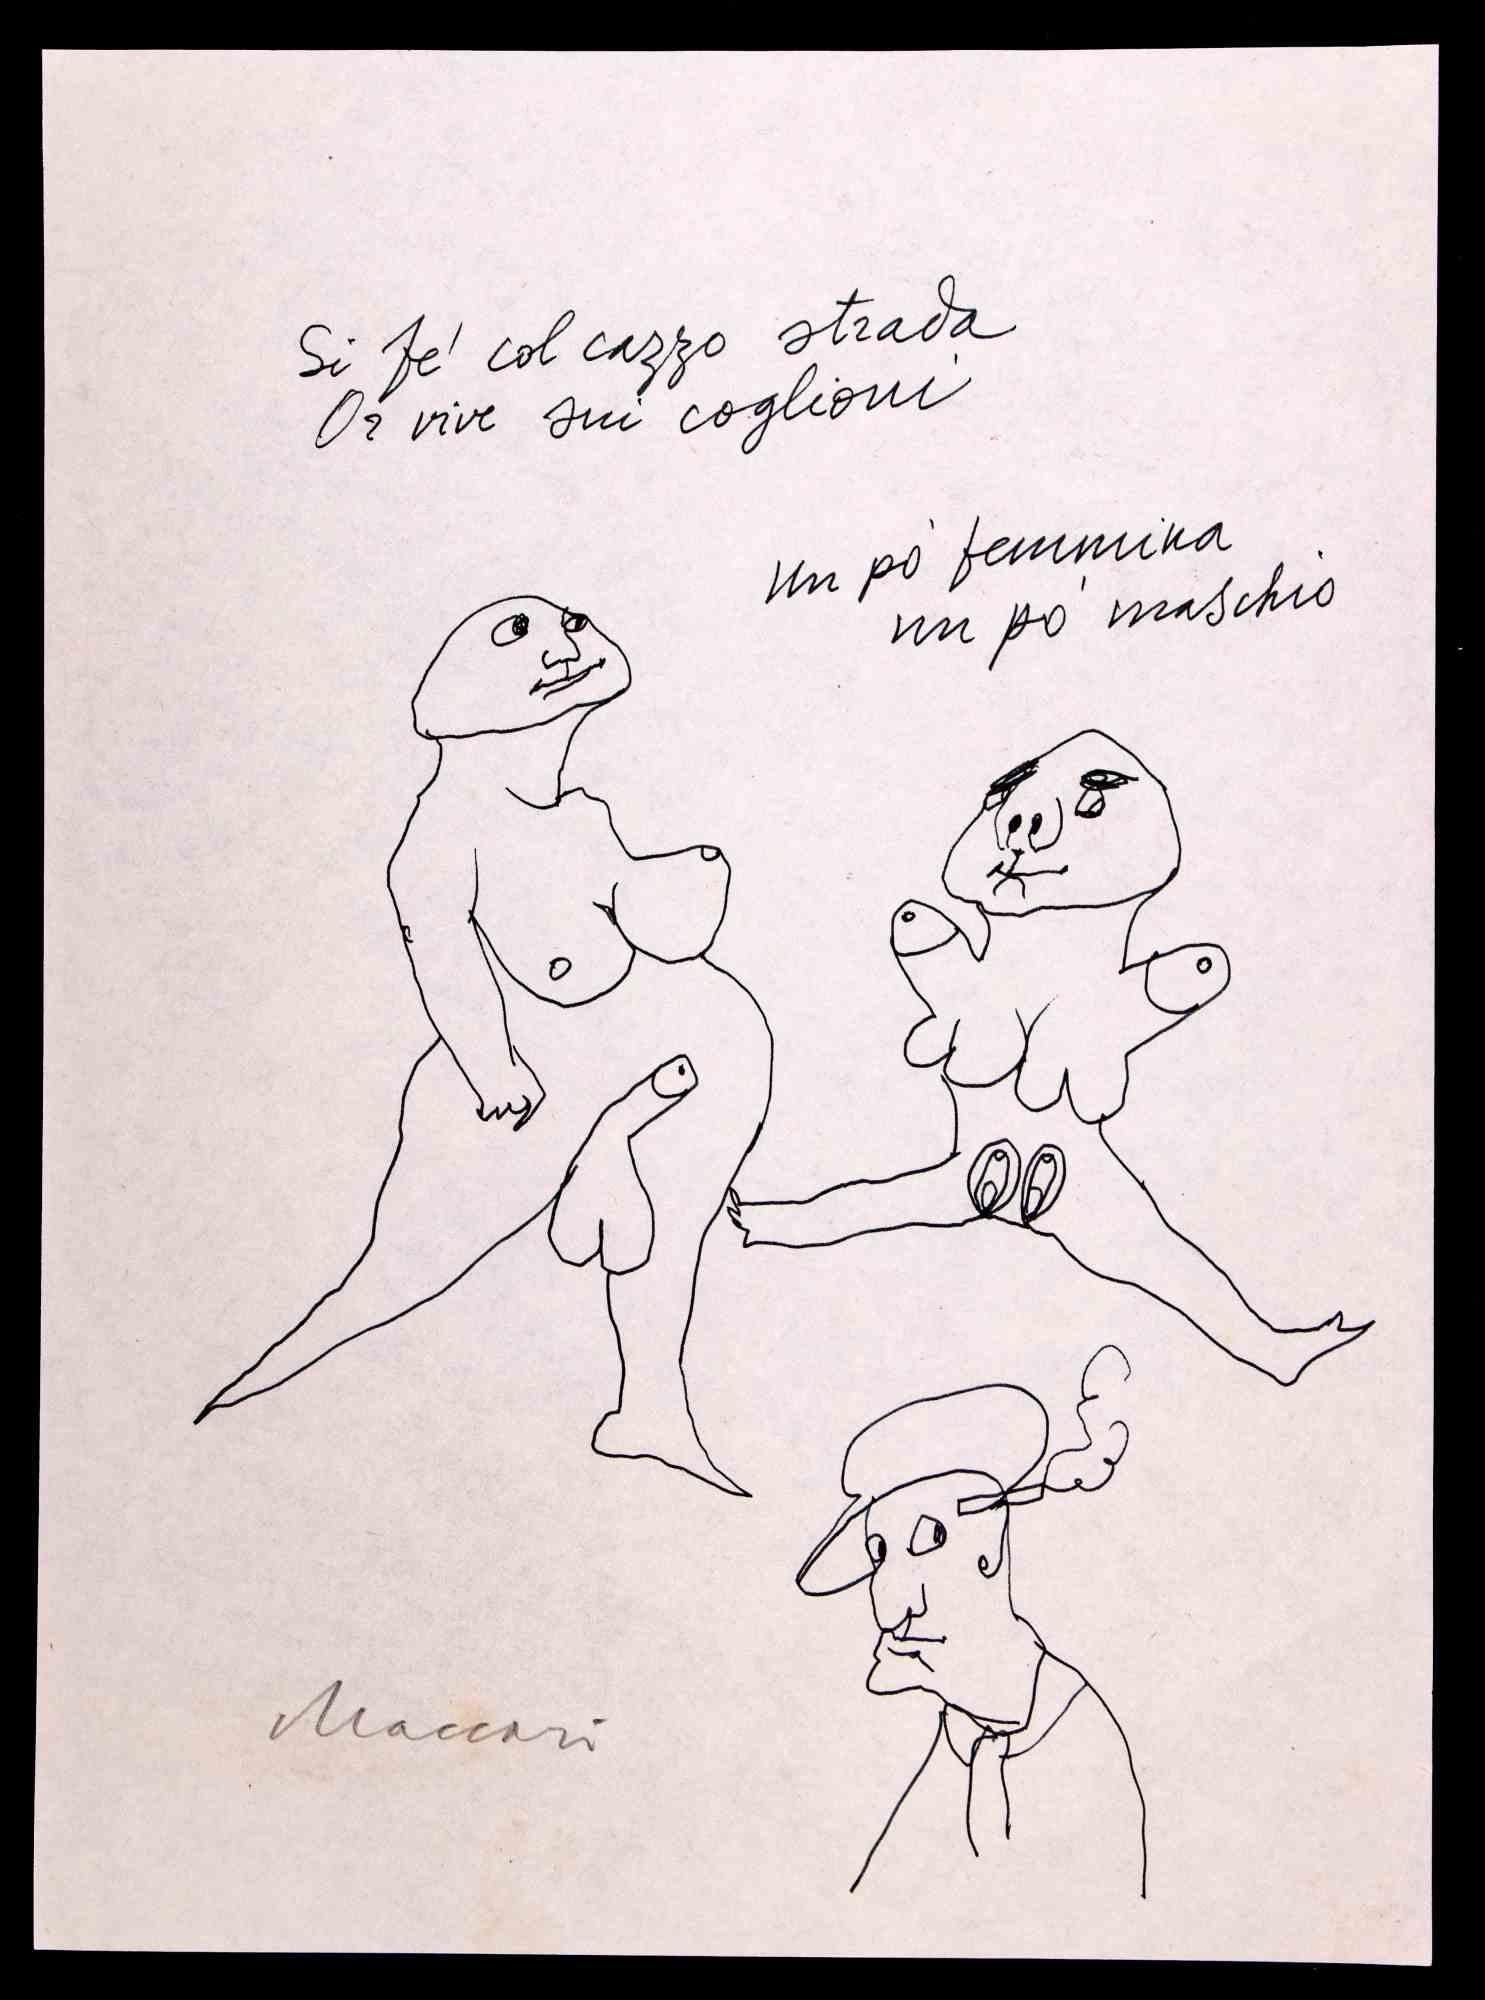 Erotische Figuren ist eine Federzeichnung von Mino Maccari aus dem Jahr 1970.

Handsigniert am unteren Rand.

Guter Zustand auf weißem Papier.

Mino Maccari (Siena, 1924-Rom, 16. Juni 1989) war ein italienischer Schriftsteller, Maler, Graveur und